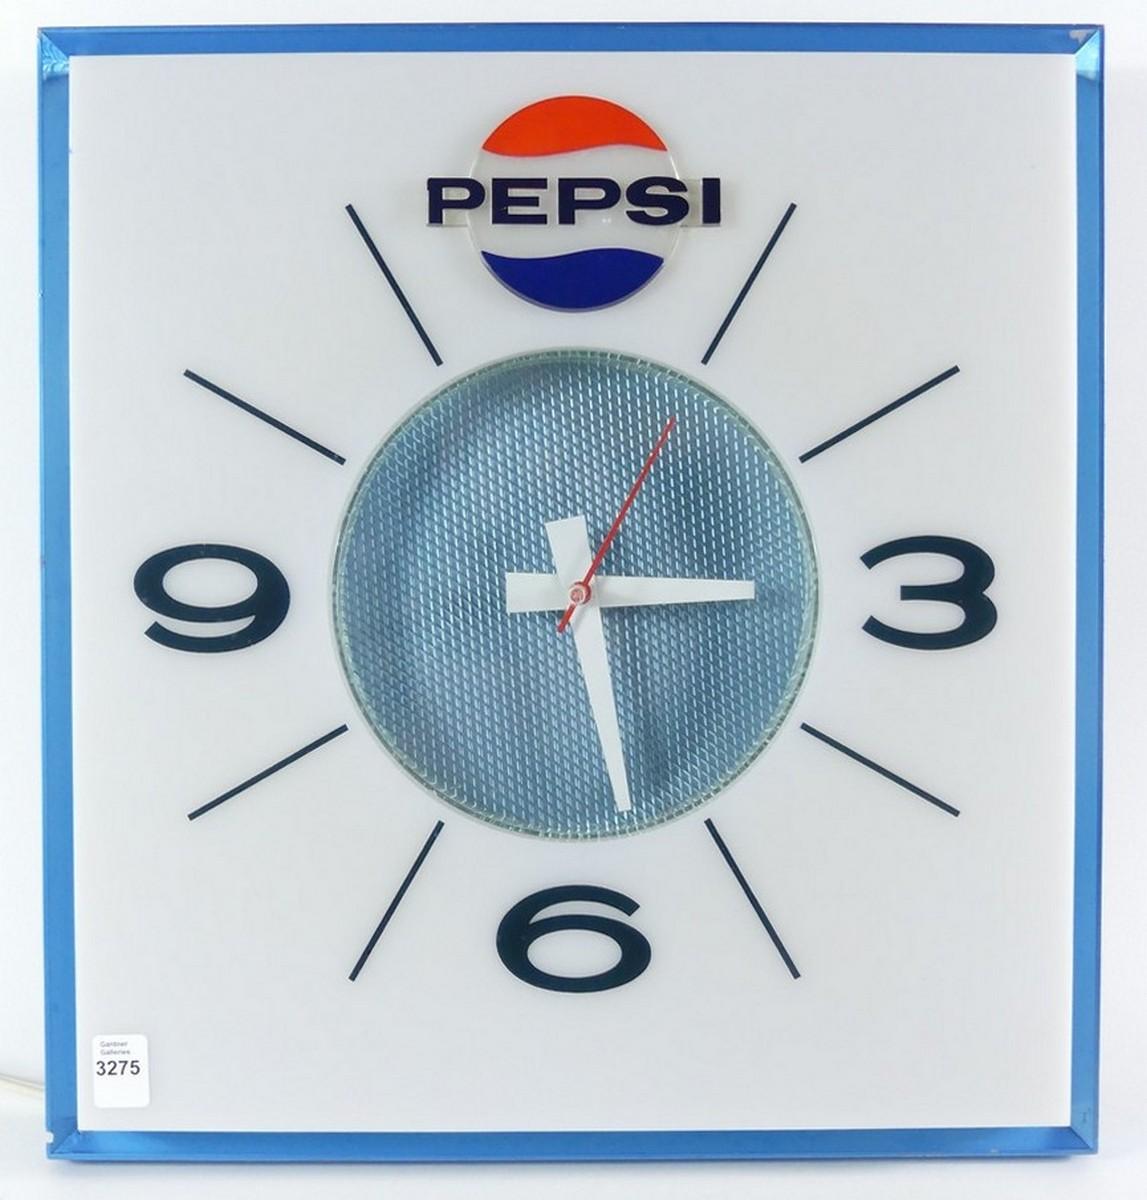 PEPSI CLOCK